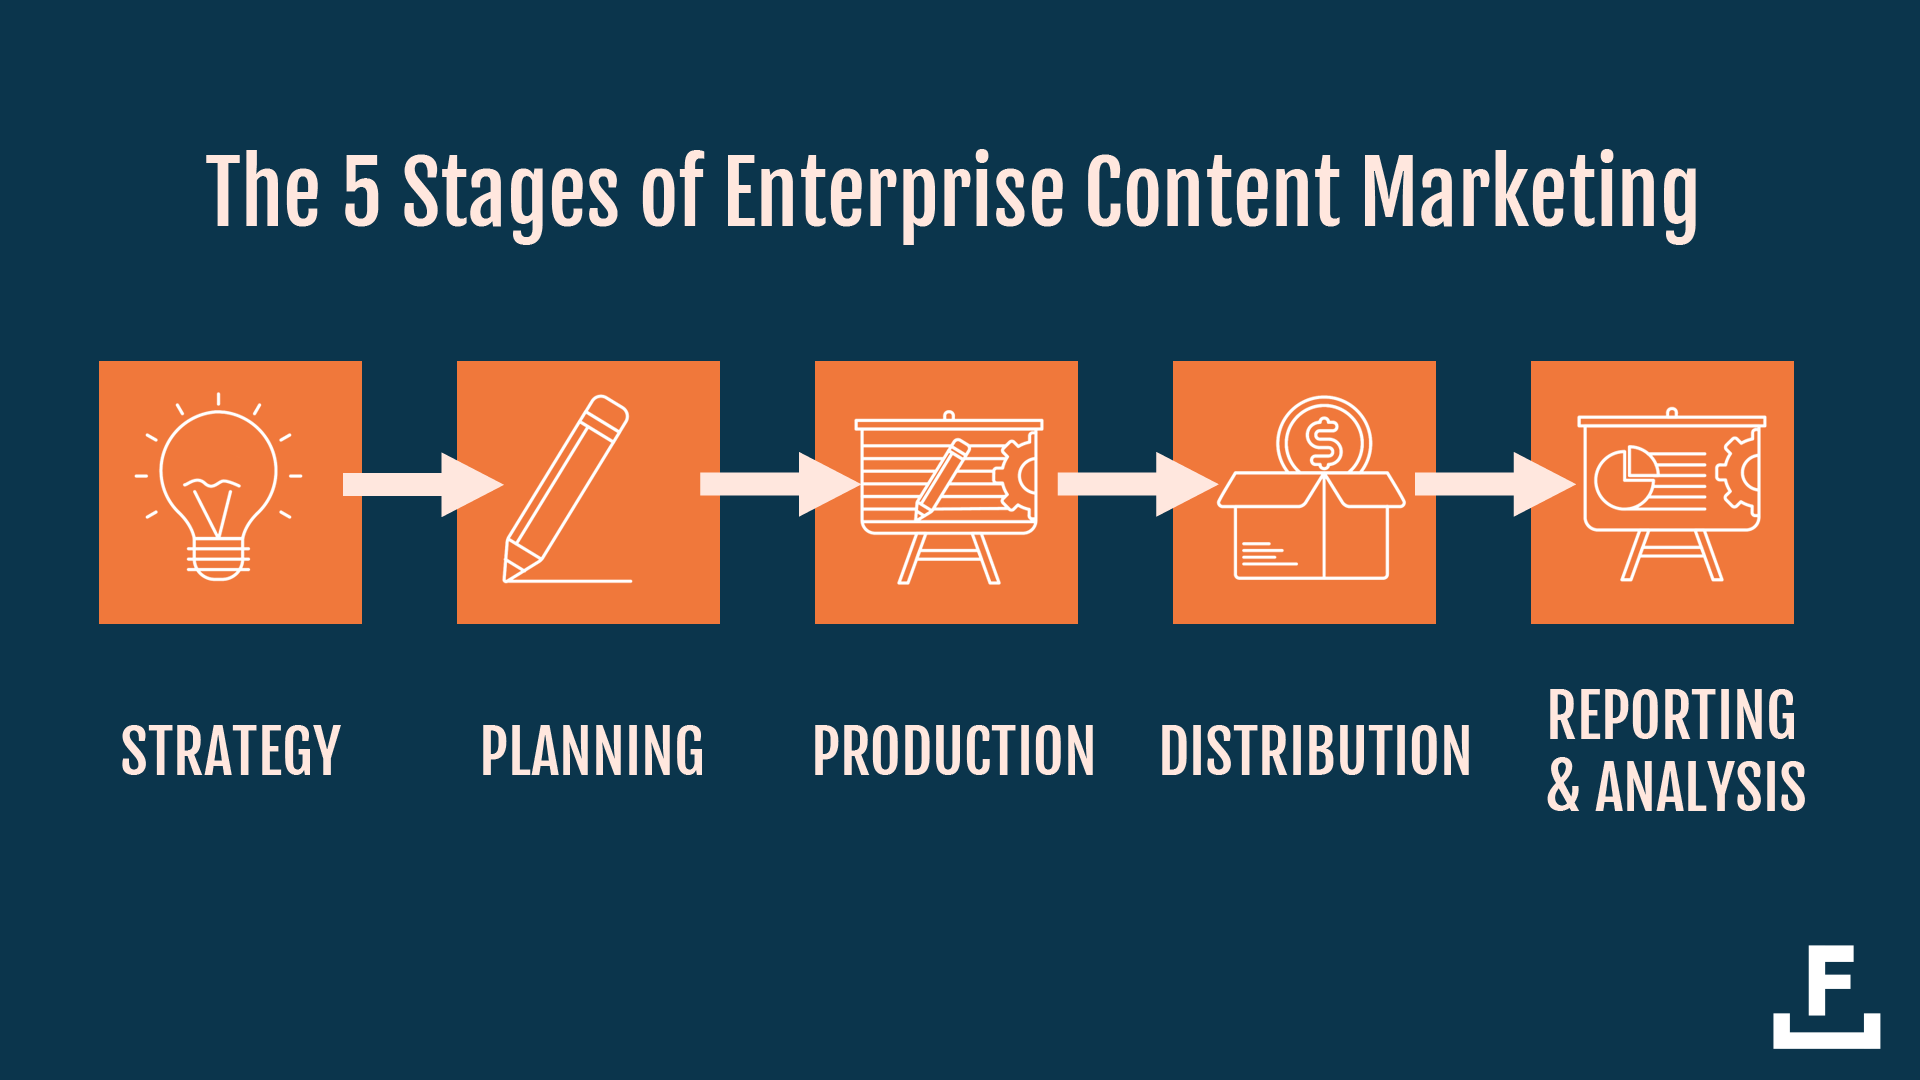 Pour produire du contenu au niveau de l'entreprise, vous devez passer par 5 étapes : stratégie, planification, production, distribution et analyse.